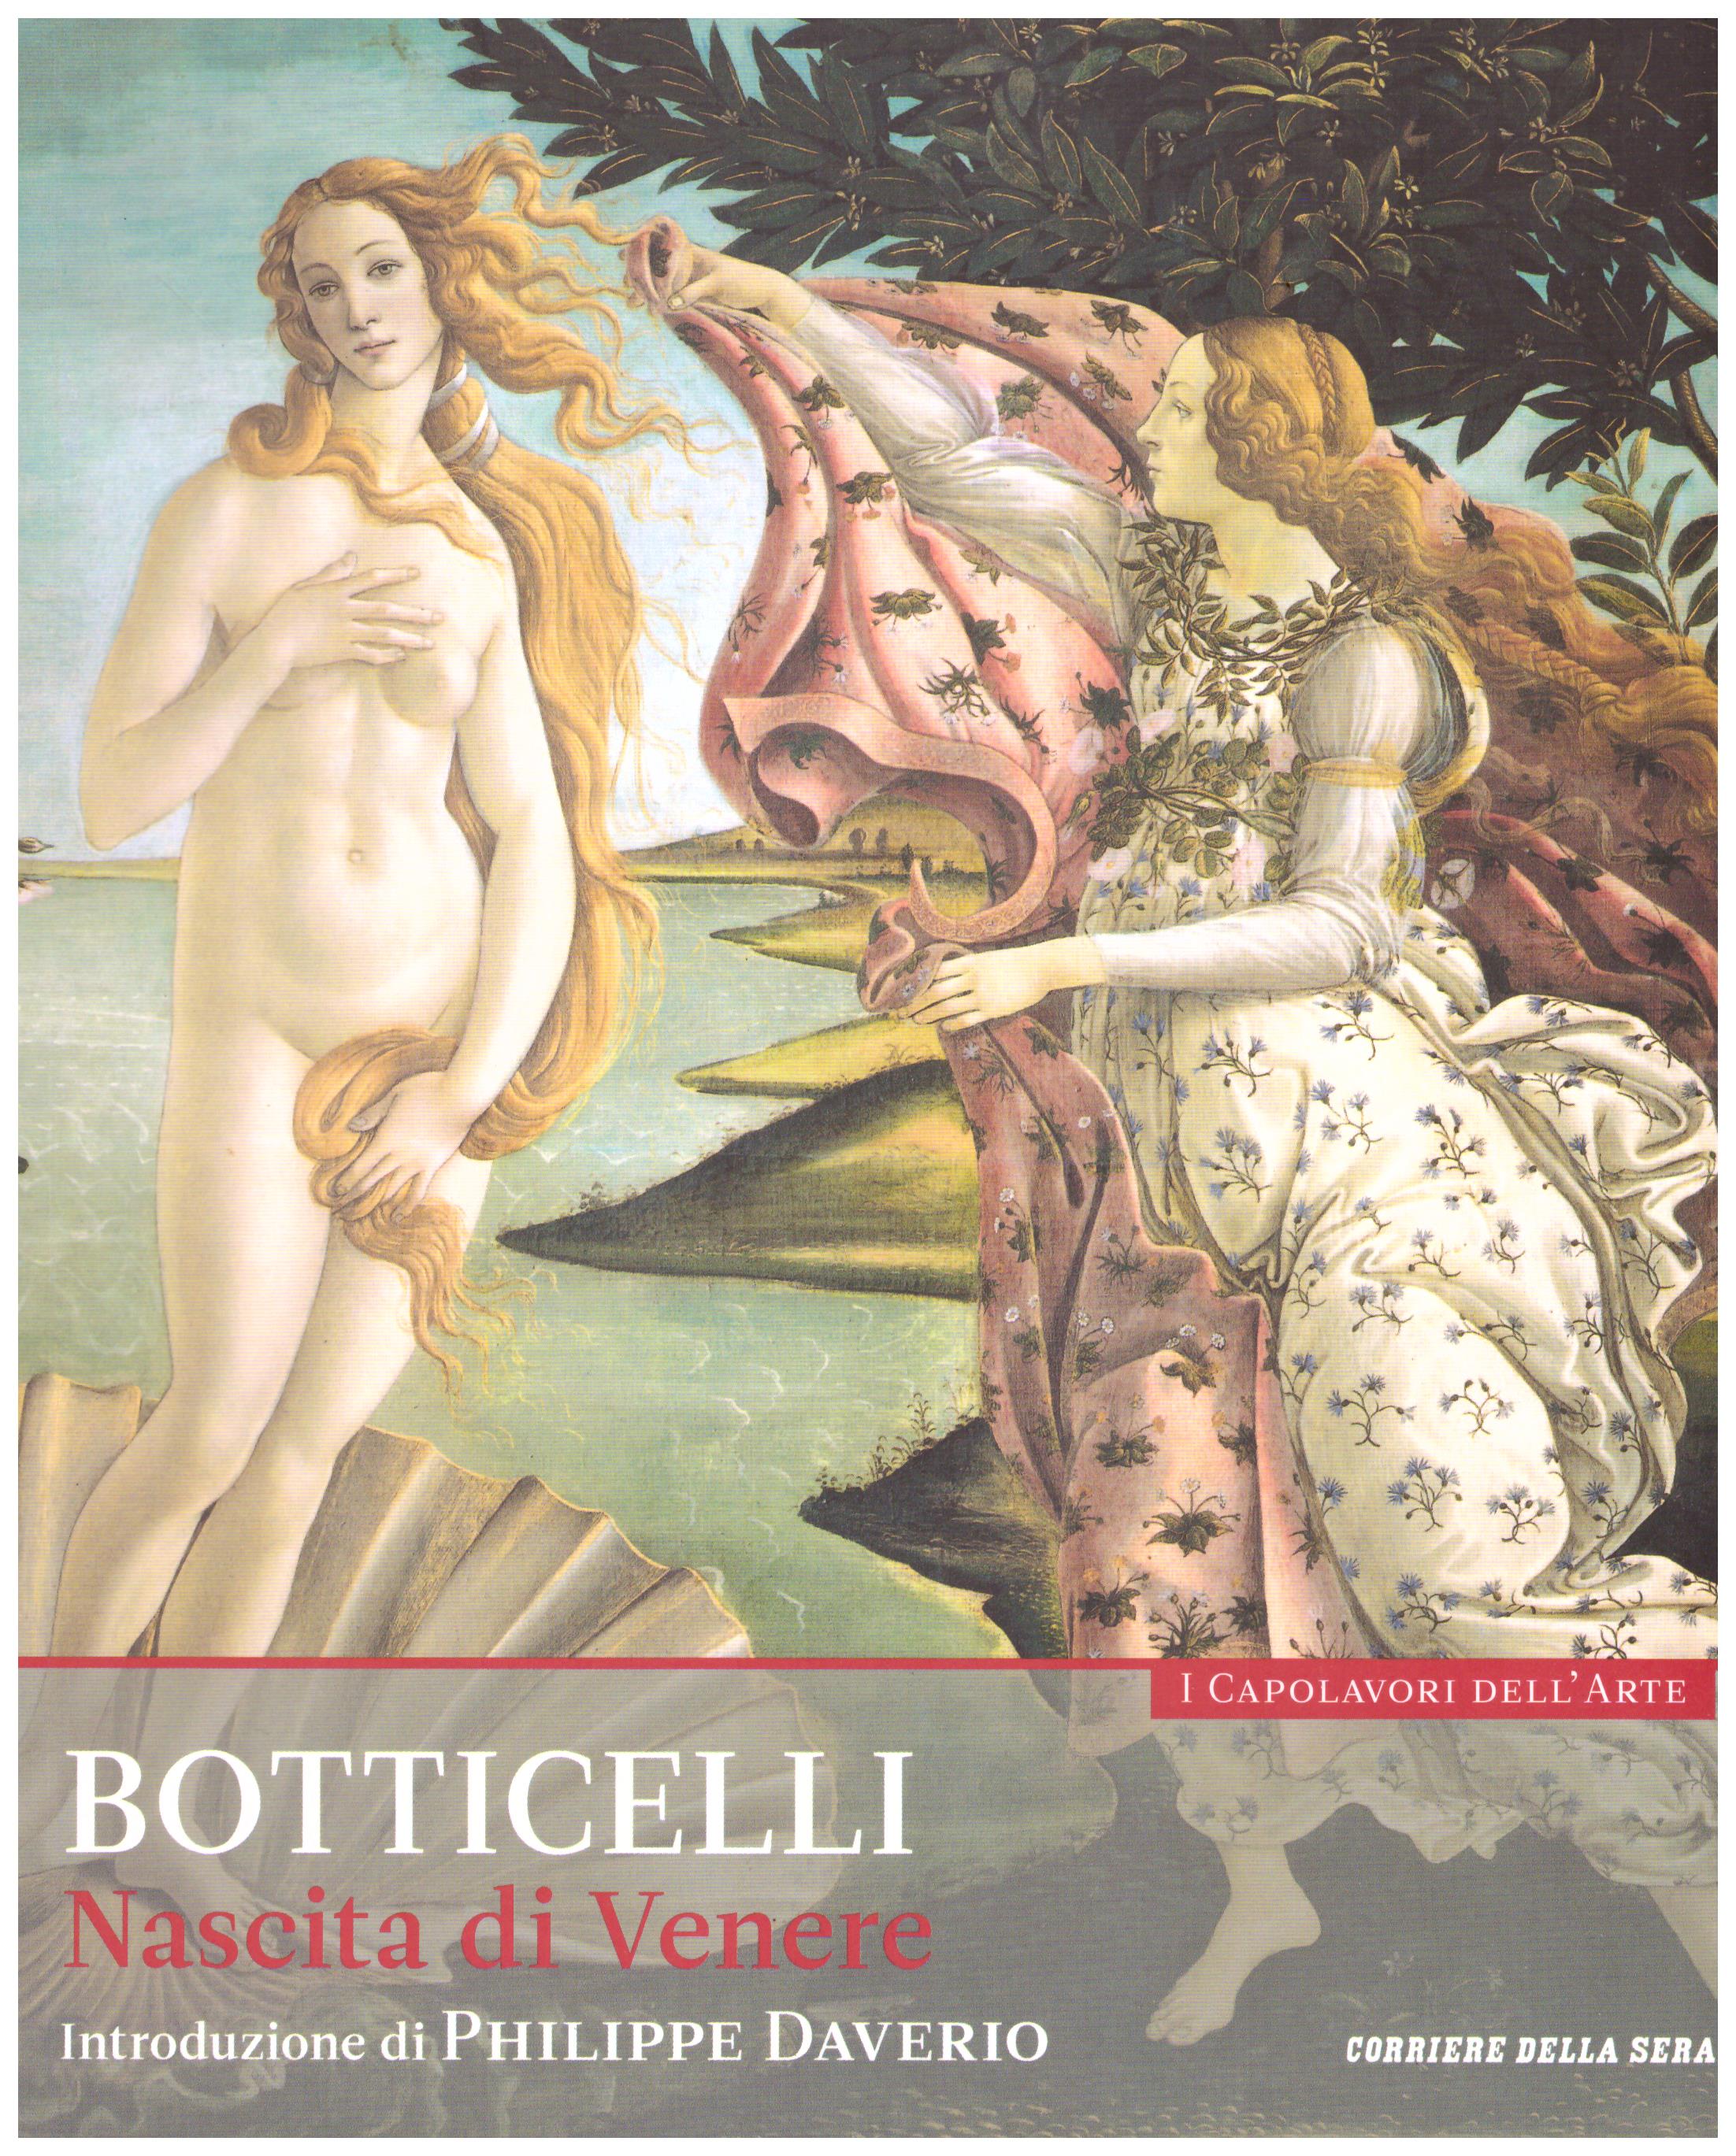 Titolo: I capolavori dell'arte, Botticelli n.1 Autore : AA.VV.   Editore: education,it/corriere della sera, 2015